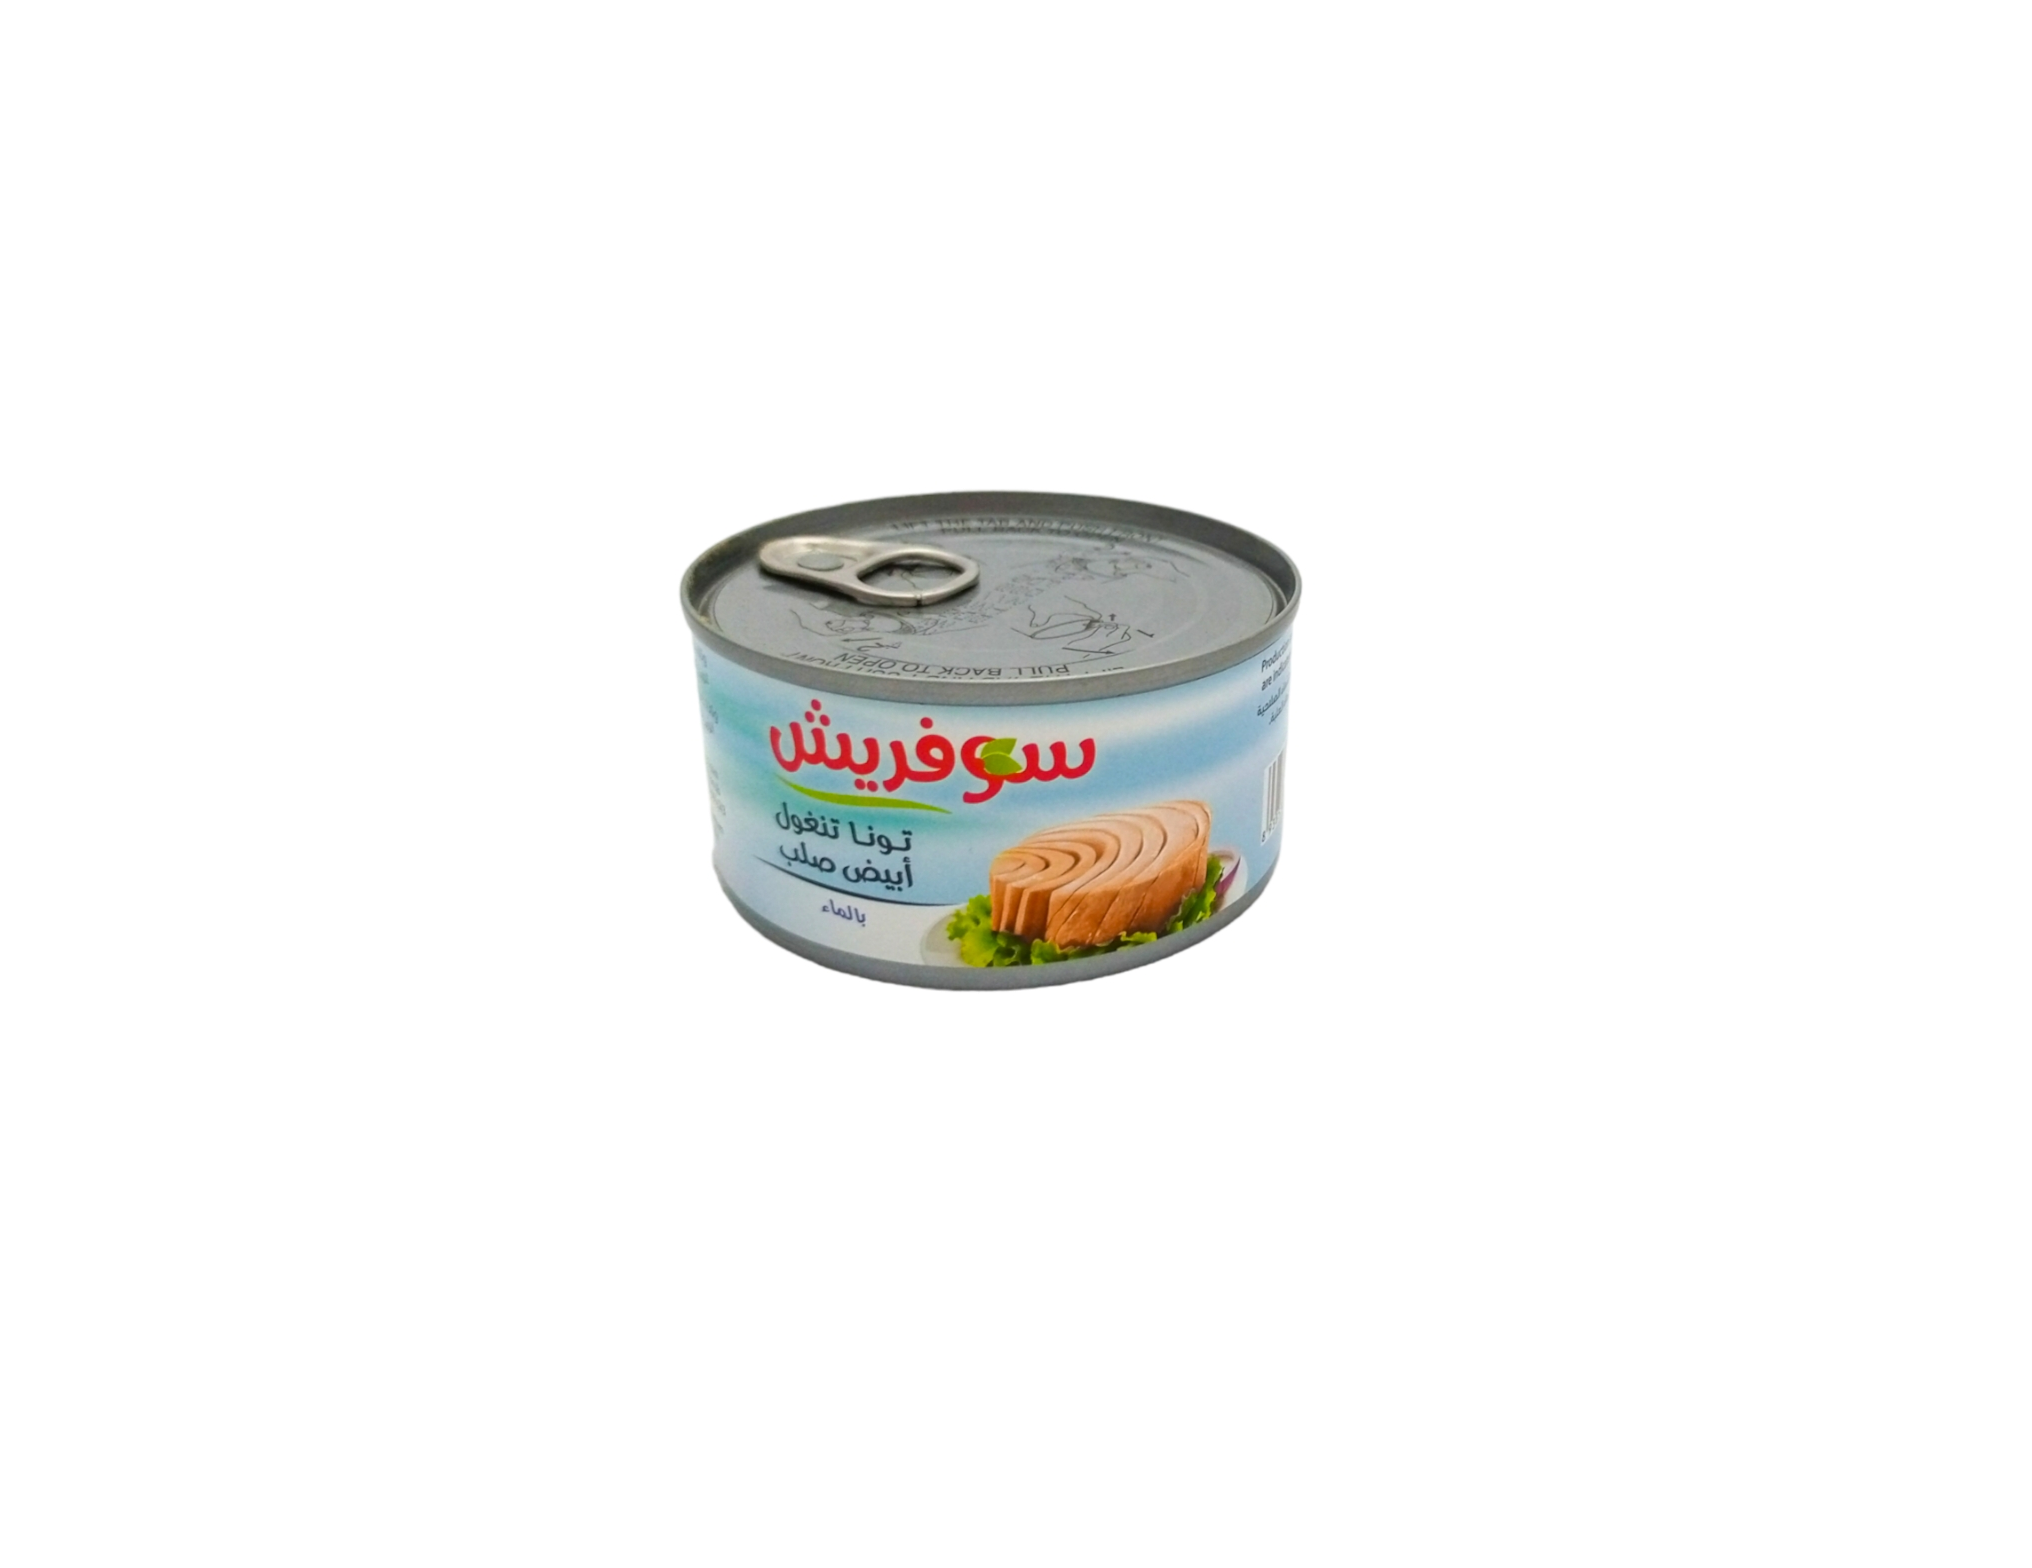 Buy Plein Soleil White Tuna In Oil 185GR Online - Shop Food